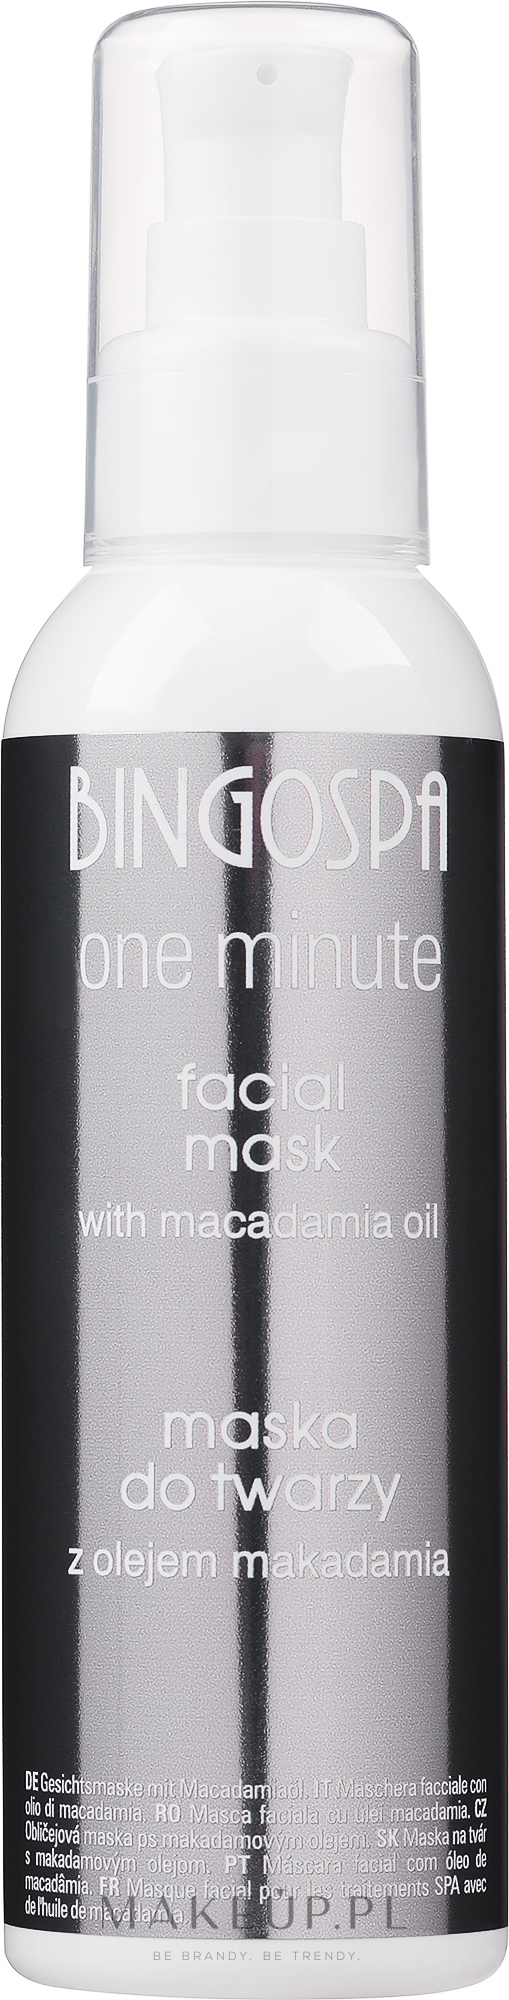 Maska do zabiegów spa do twarzy 100% olej makadamia - BingoSpa Mask For SPA 100% Macadamia Oil — Zdjęcie 150 g